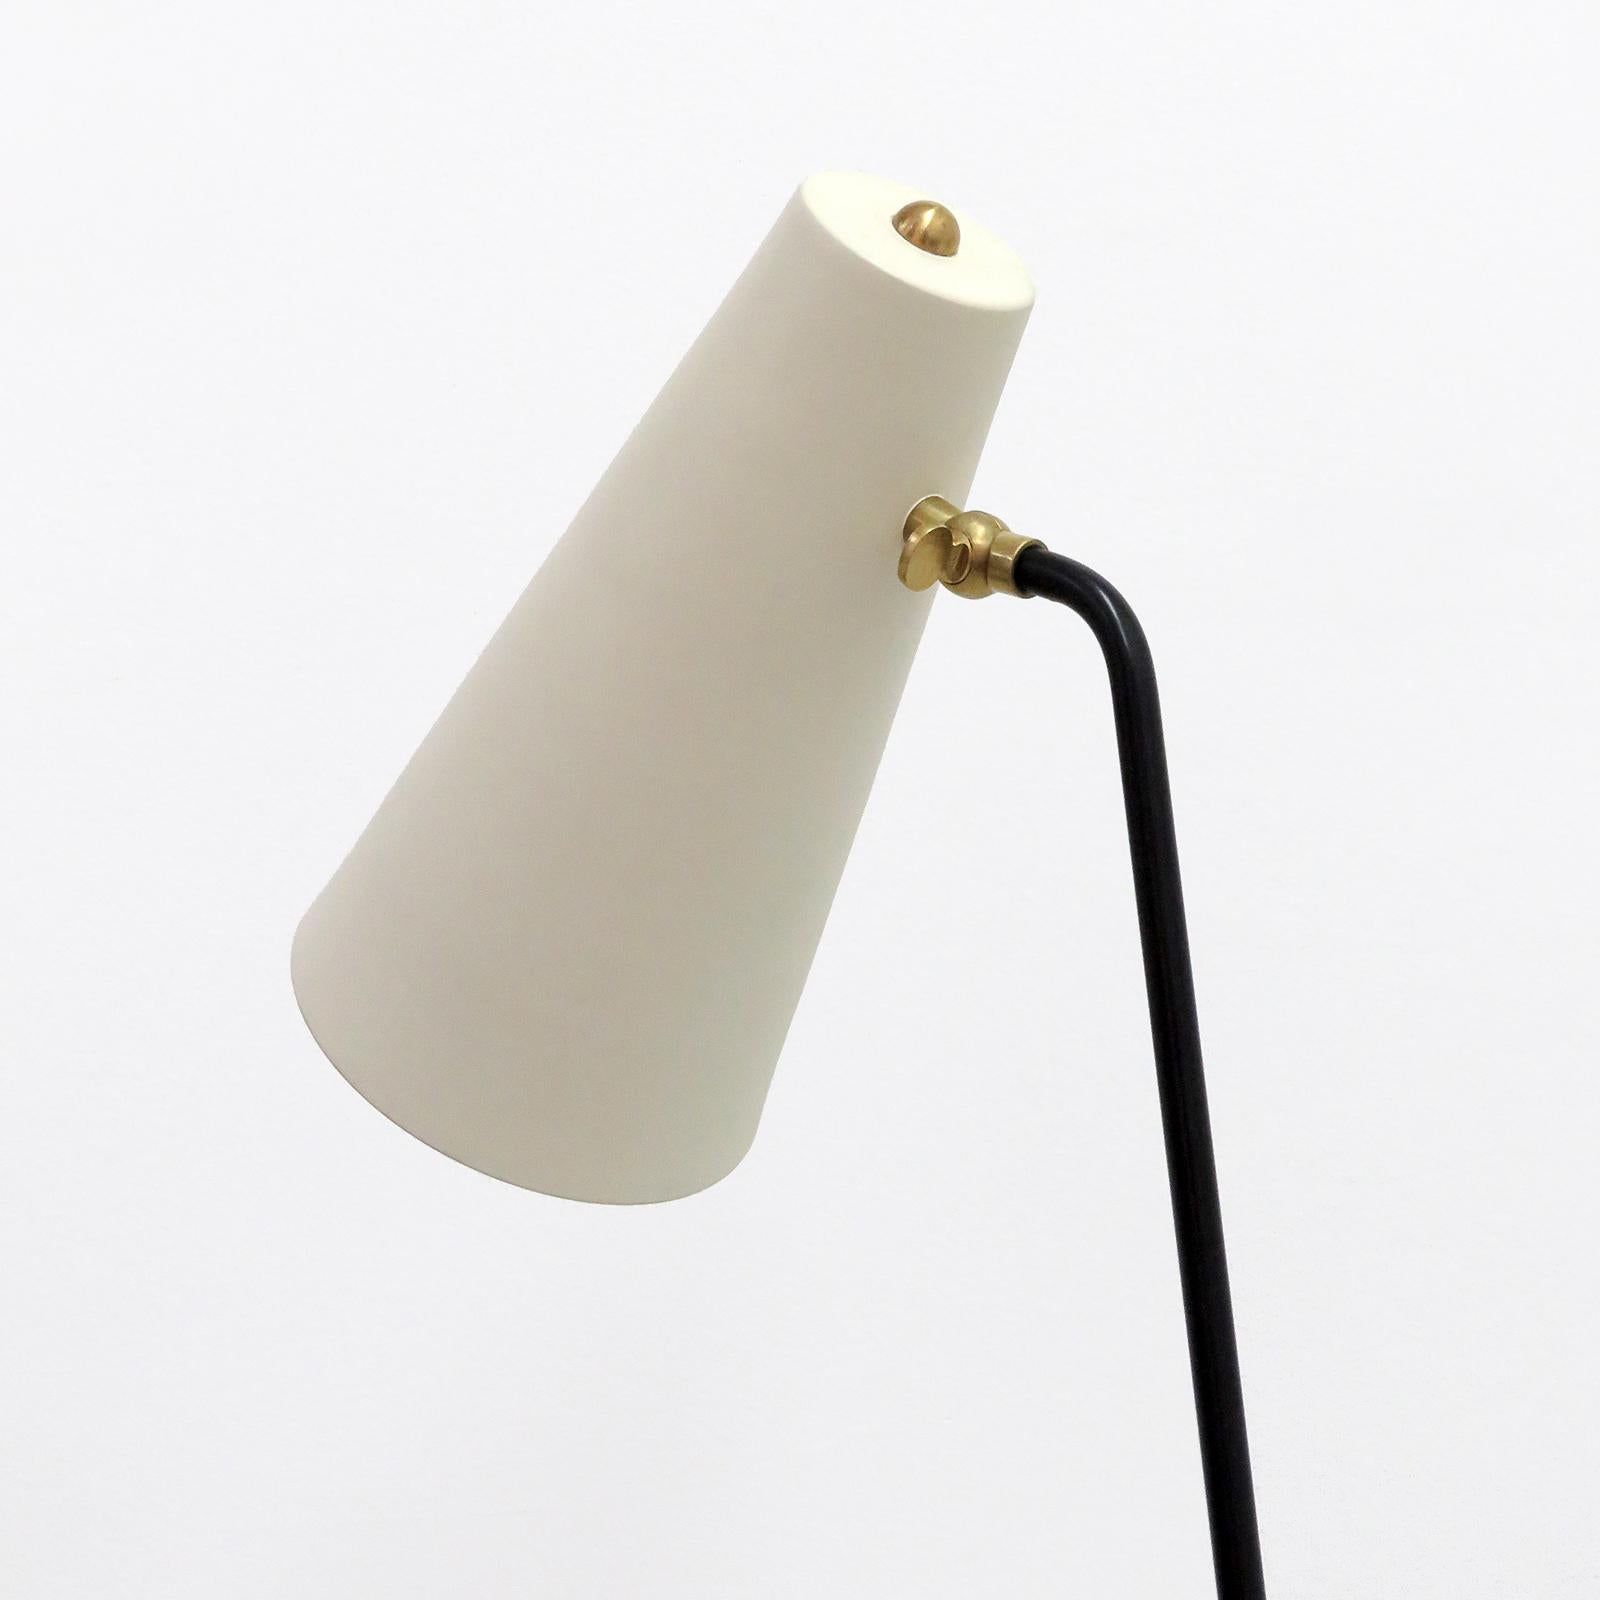 American Minimalist Floor Lamp 'Apex' by Gallery L7